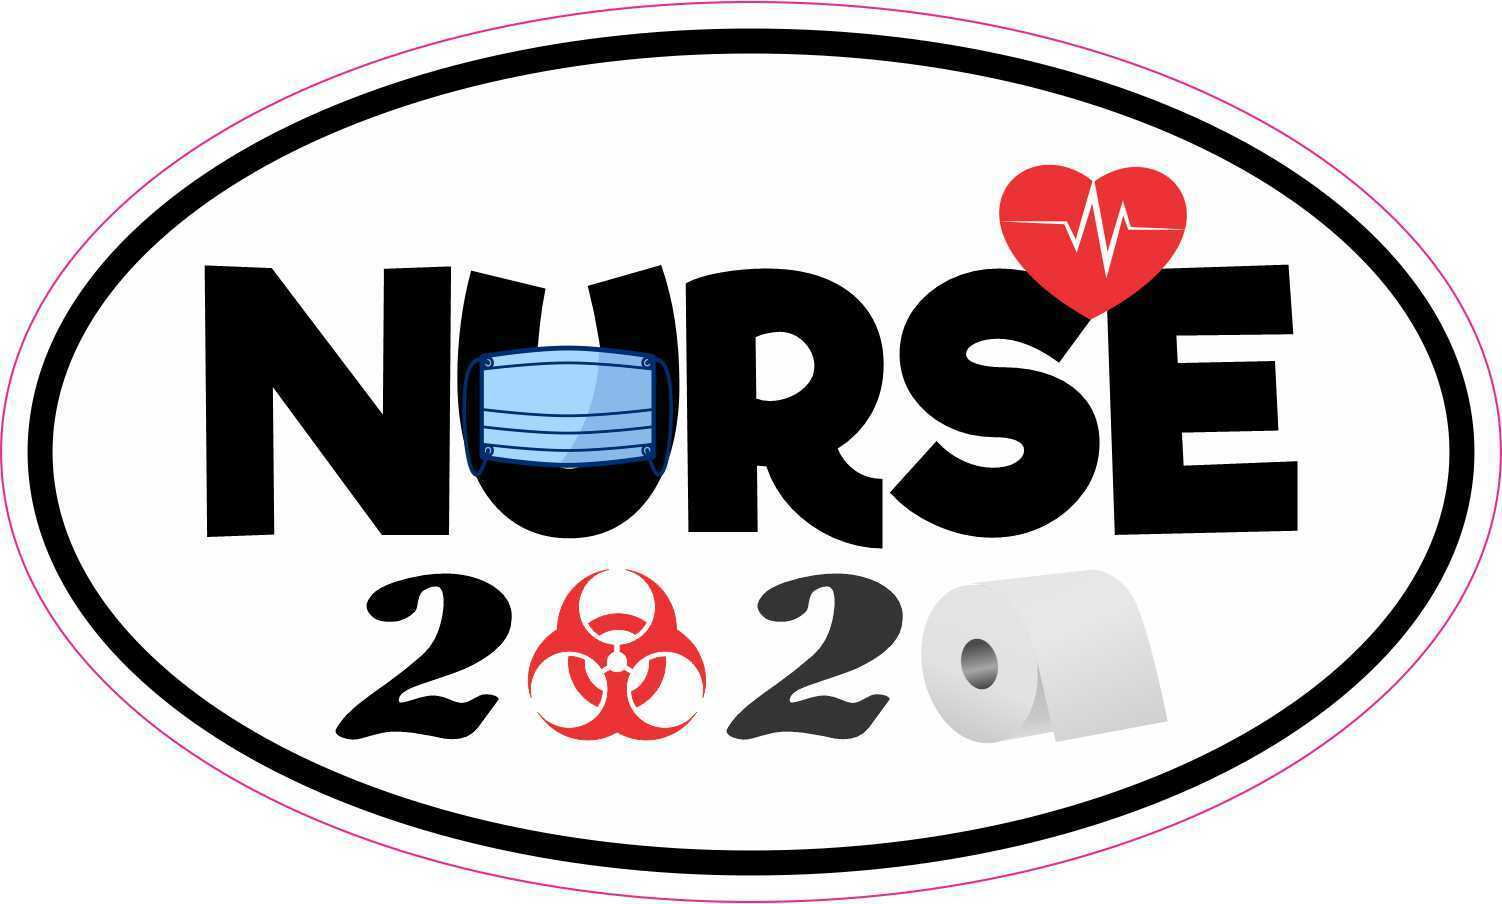 StickerTalk 5in x 3in Biohazard Nurse 2020 Vinyl Sticker Car Truck Vehicle Bu...